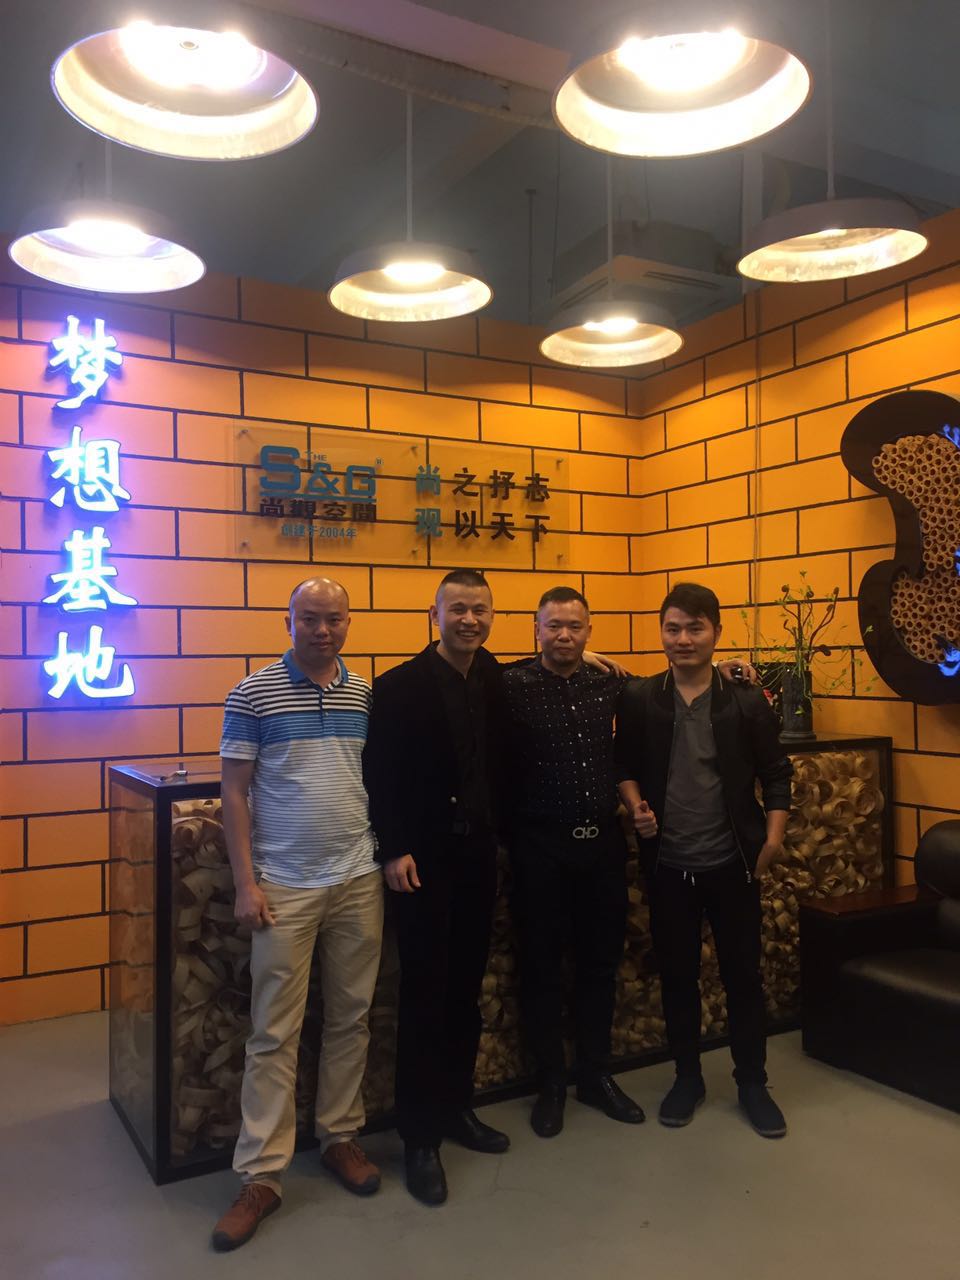 4广州市尚观展览工程有限公司创始人颜古率工程部陆杰，与考察企业中的客户.jpg